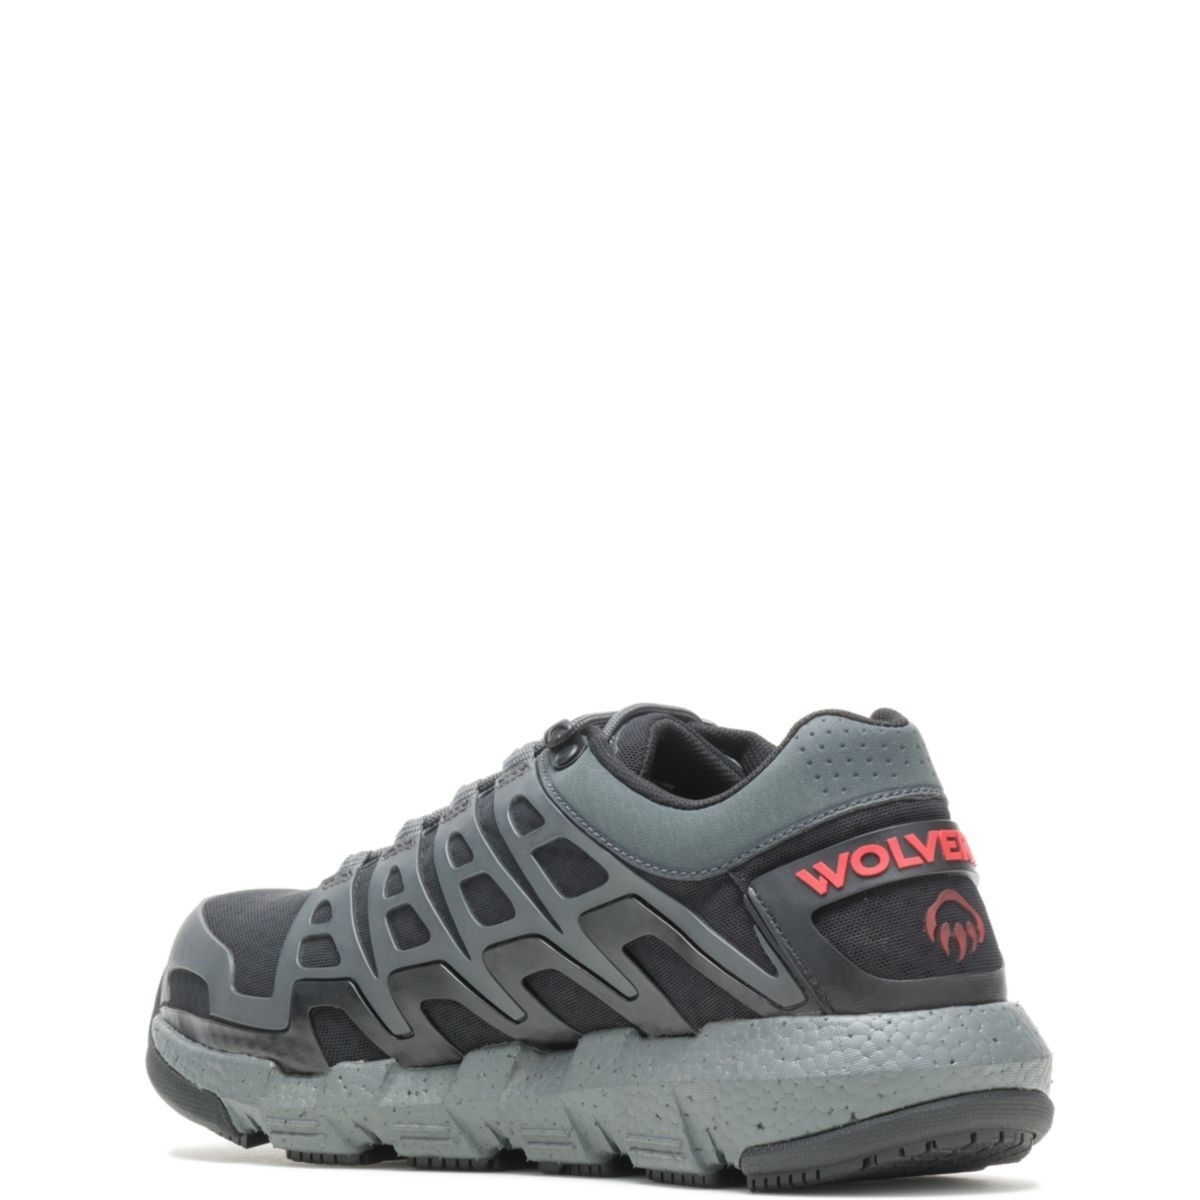 WOLVERINE Men's Rev Vent UltraSpringâ¢ DuraShocksÂ® CarbonMAXÂ® Composite Toe Work Shoe Charcoal - W211016 CHARCOAL - CHARCOAL, 7